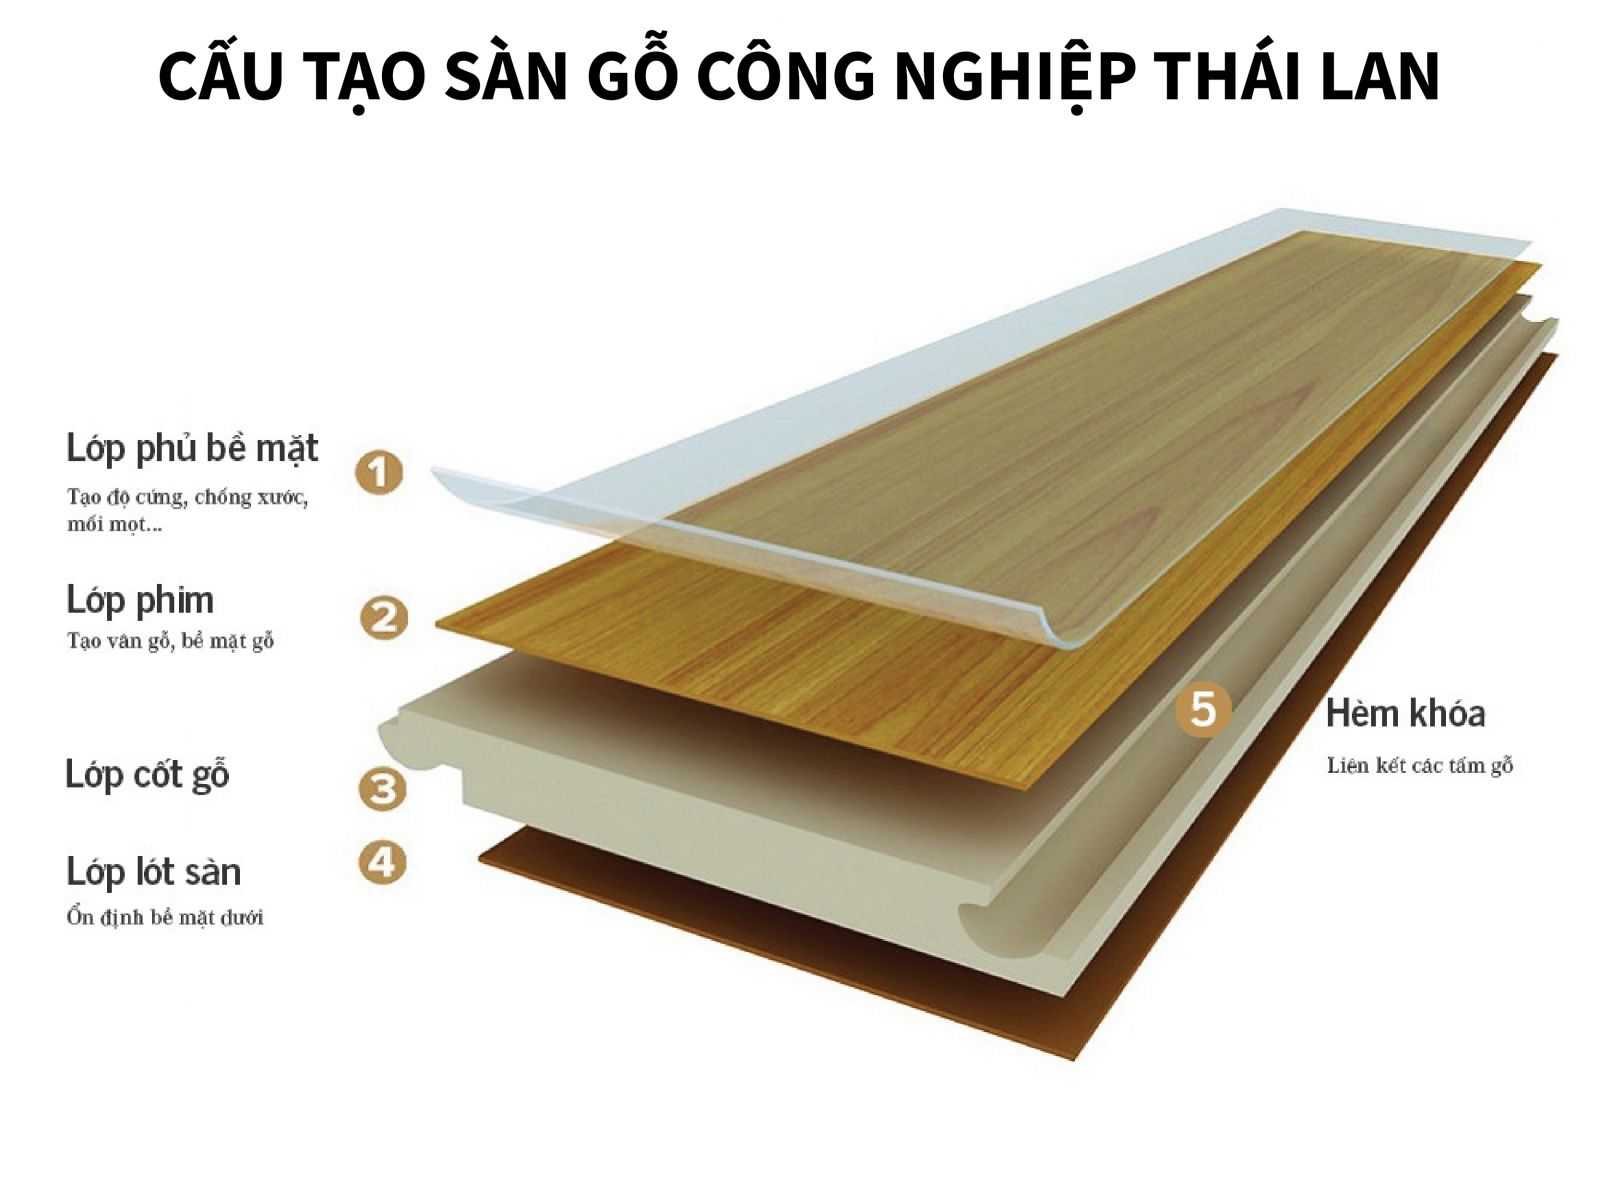 Cấu tạo sàn gỗ công nghiệp Thái Lan